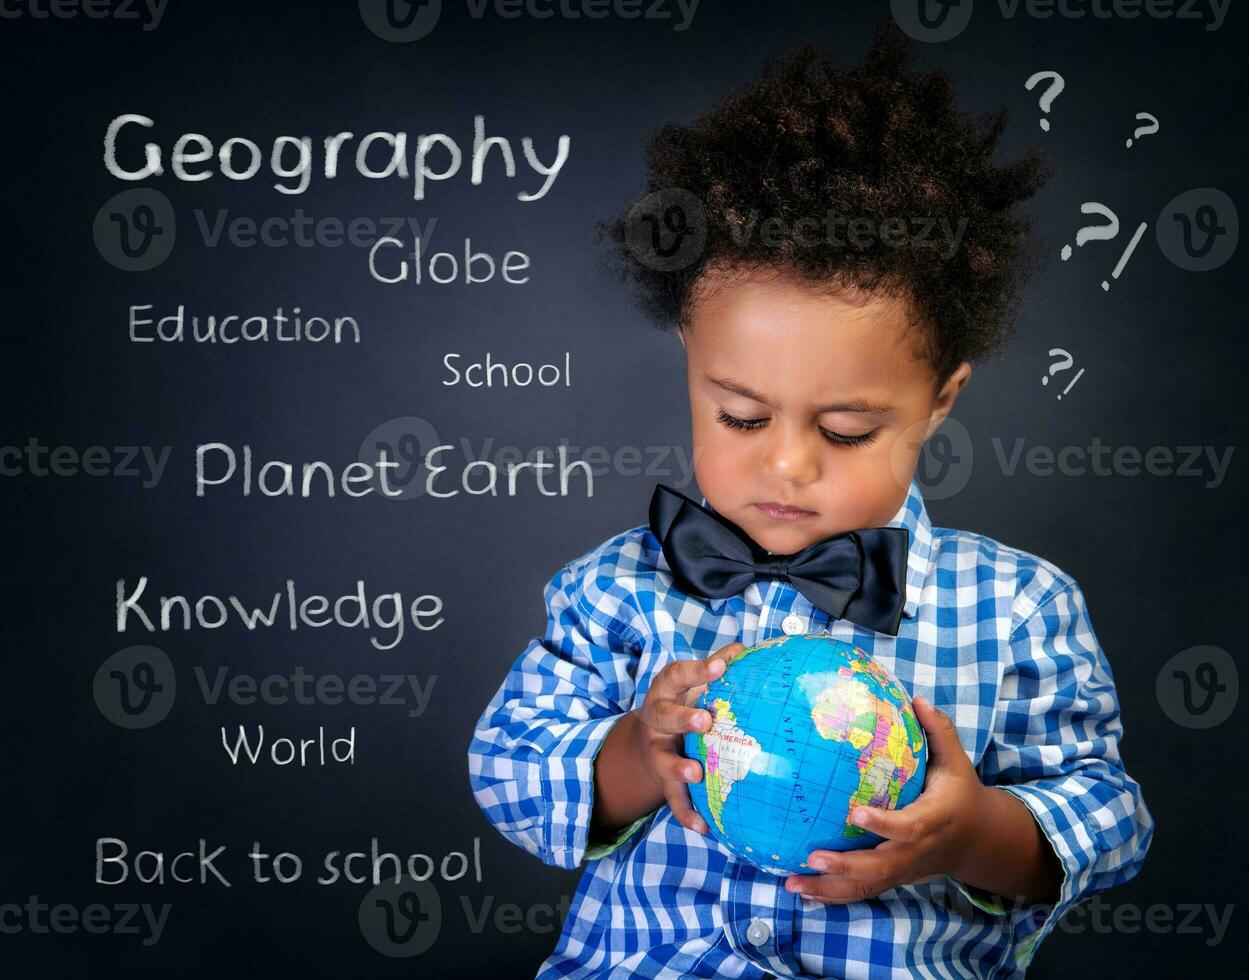 geografía lección en colegio foto